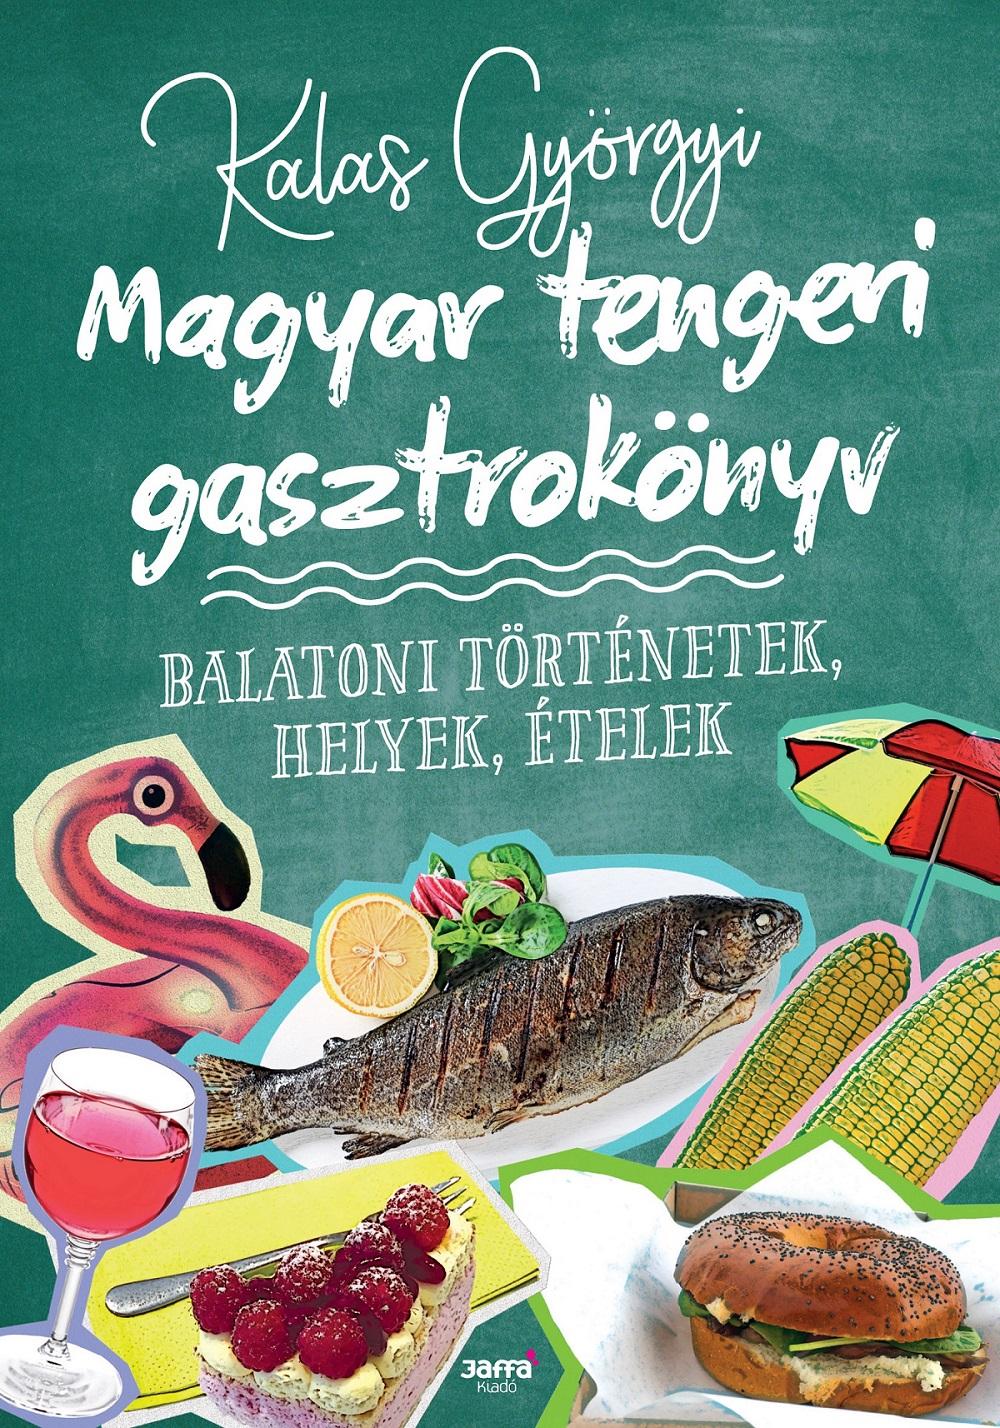 Kalas Györgyi - Magyar tengeri gasztrokönyv - Balatoni történetek, helyek, ételek - ÜKH 2018